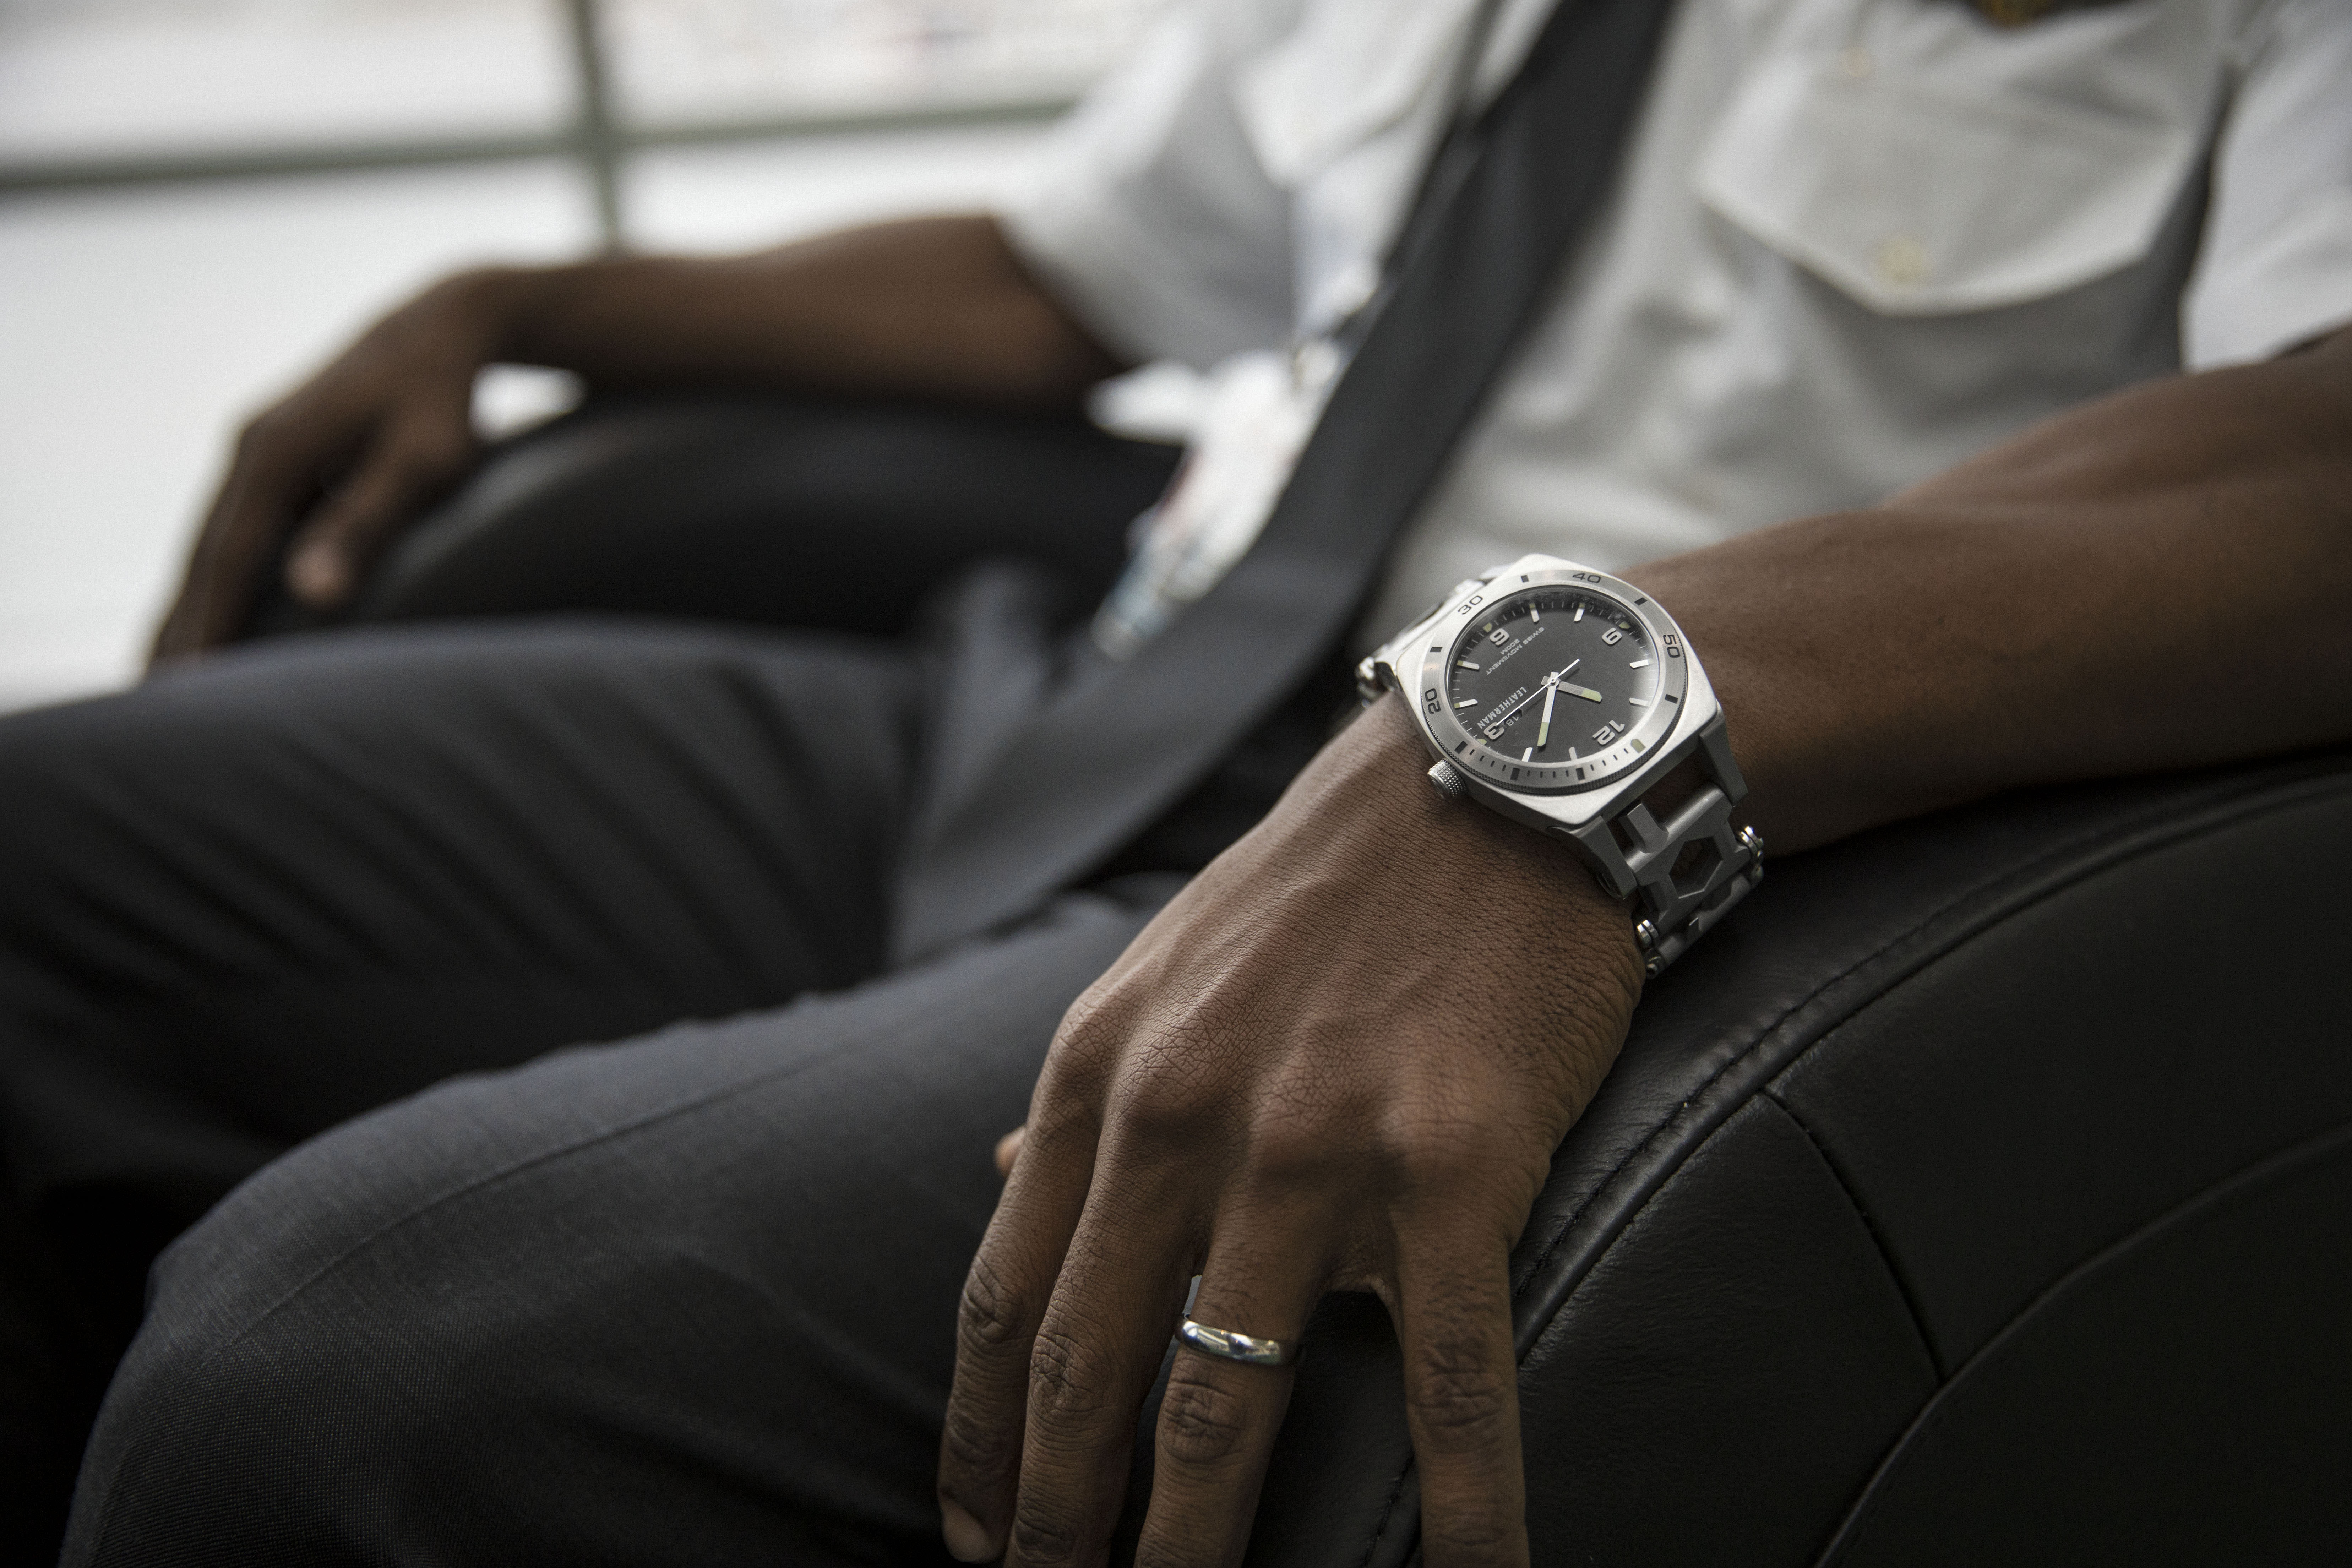 Leatherman tread tempo multi-tool watch on wrist, stainless steel